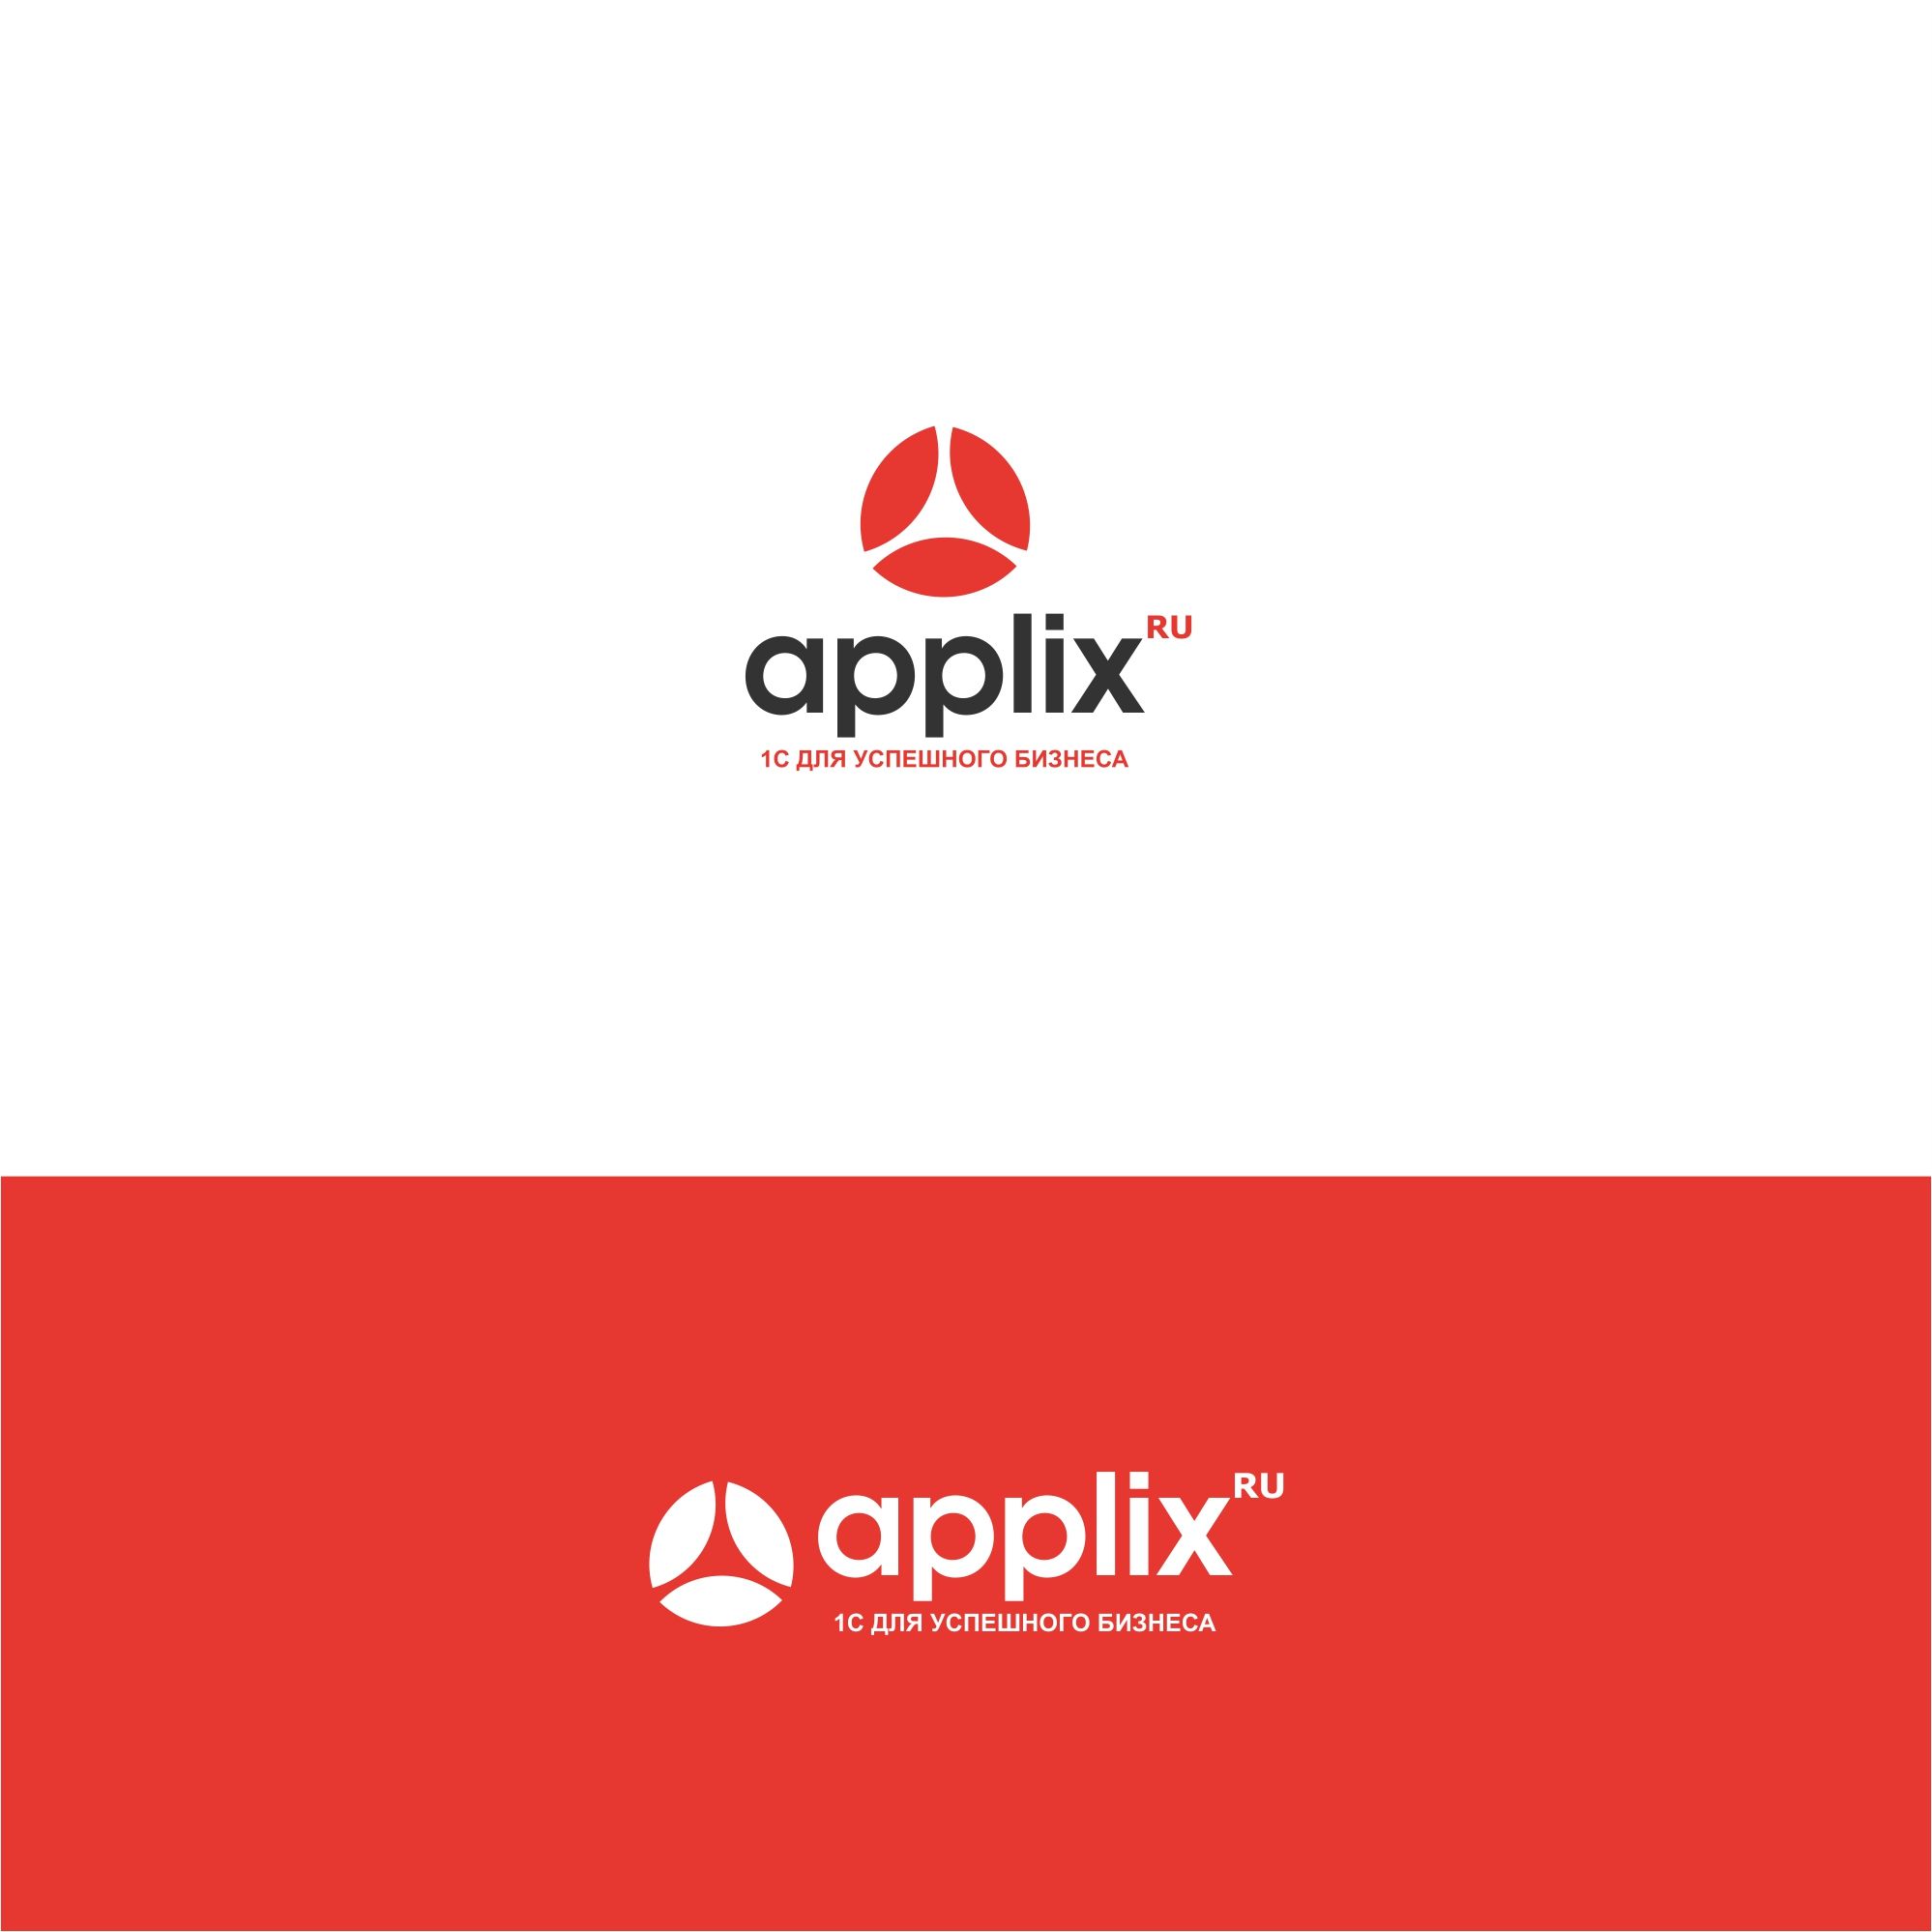 Лого и фирменный стиль для applix.ru / APPLIX.RU - дизайнер serz4868